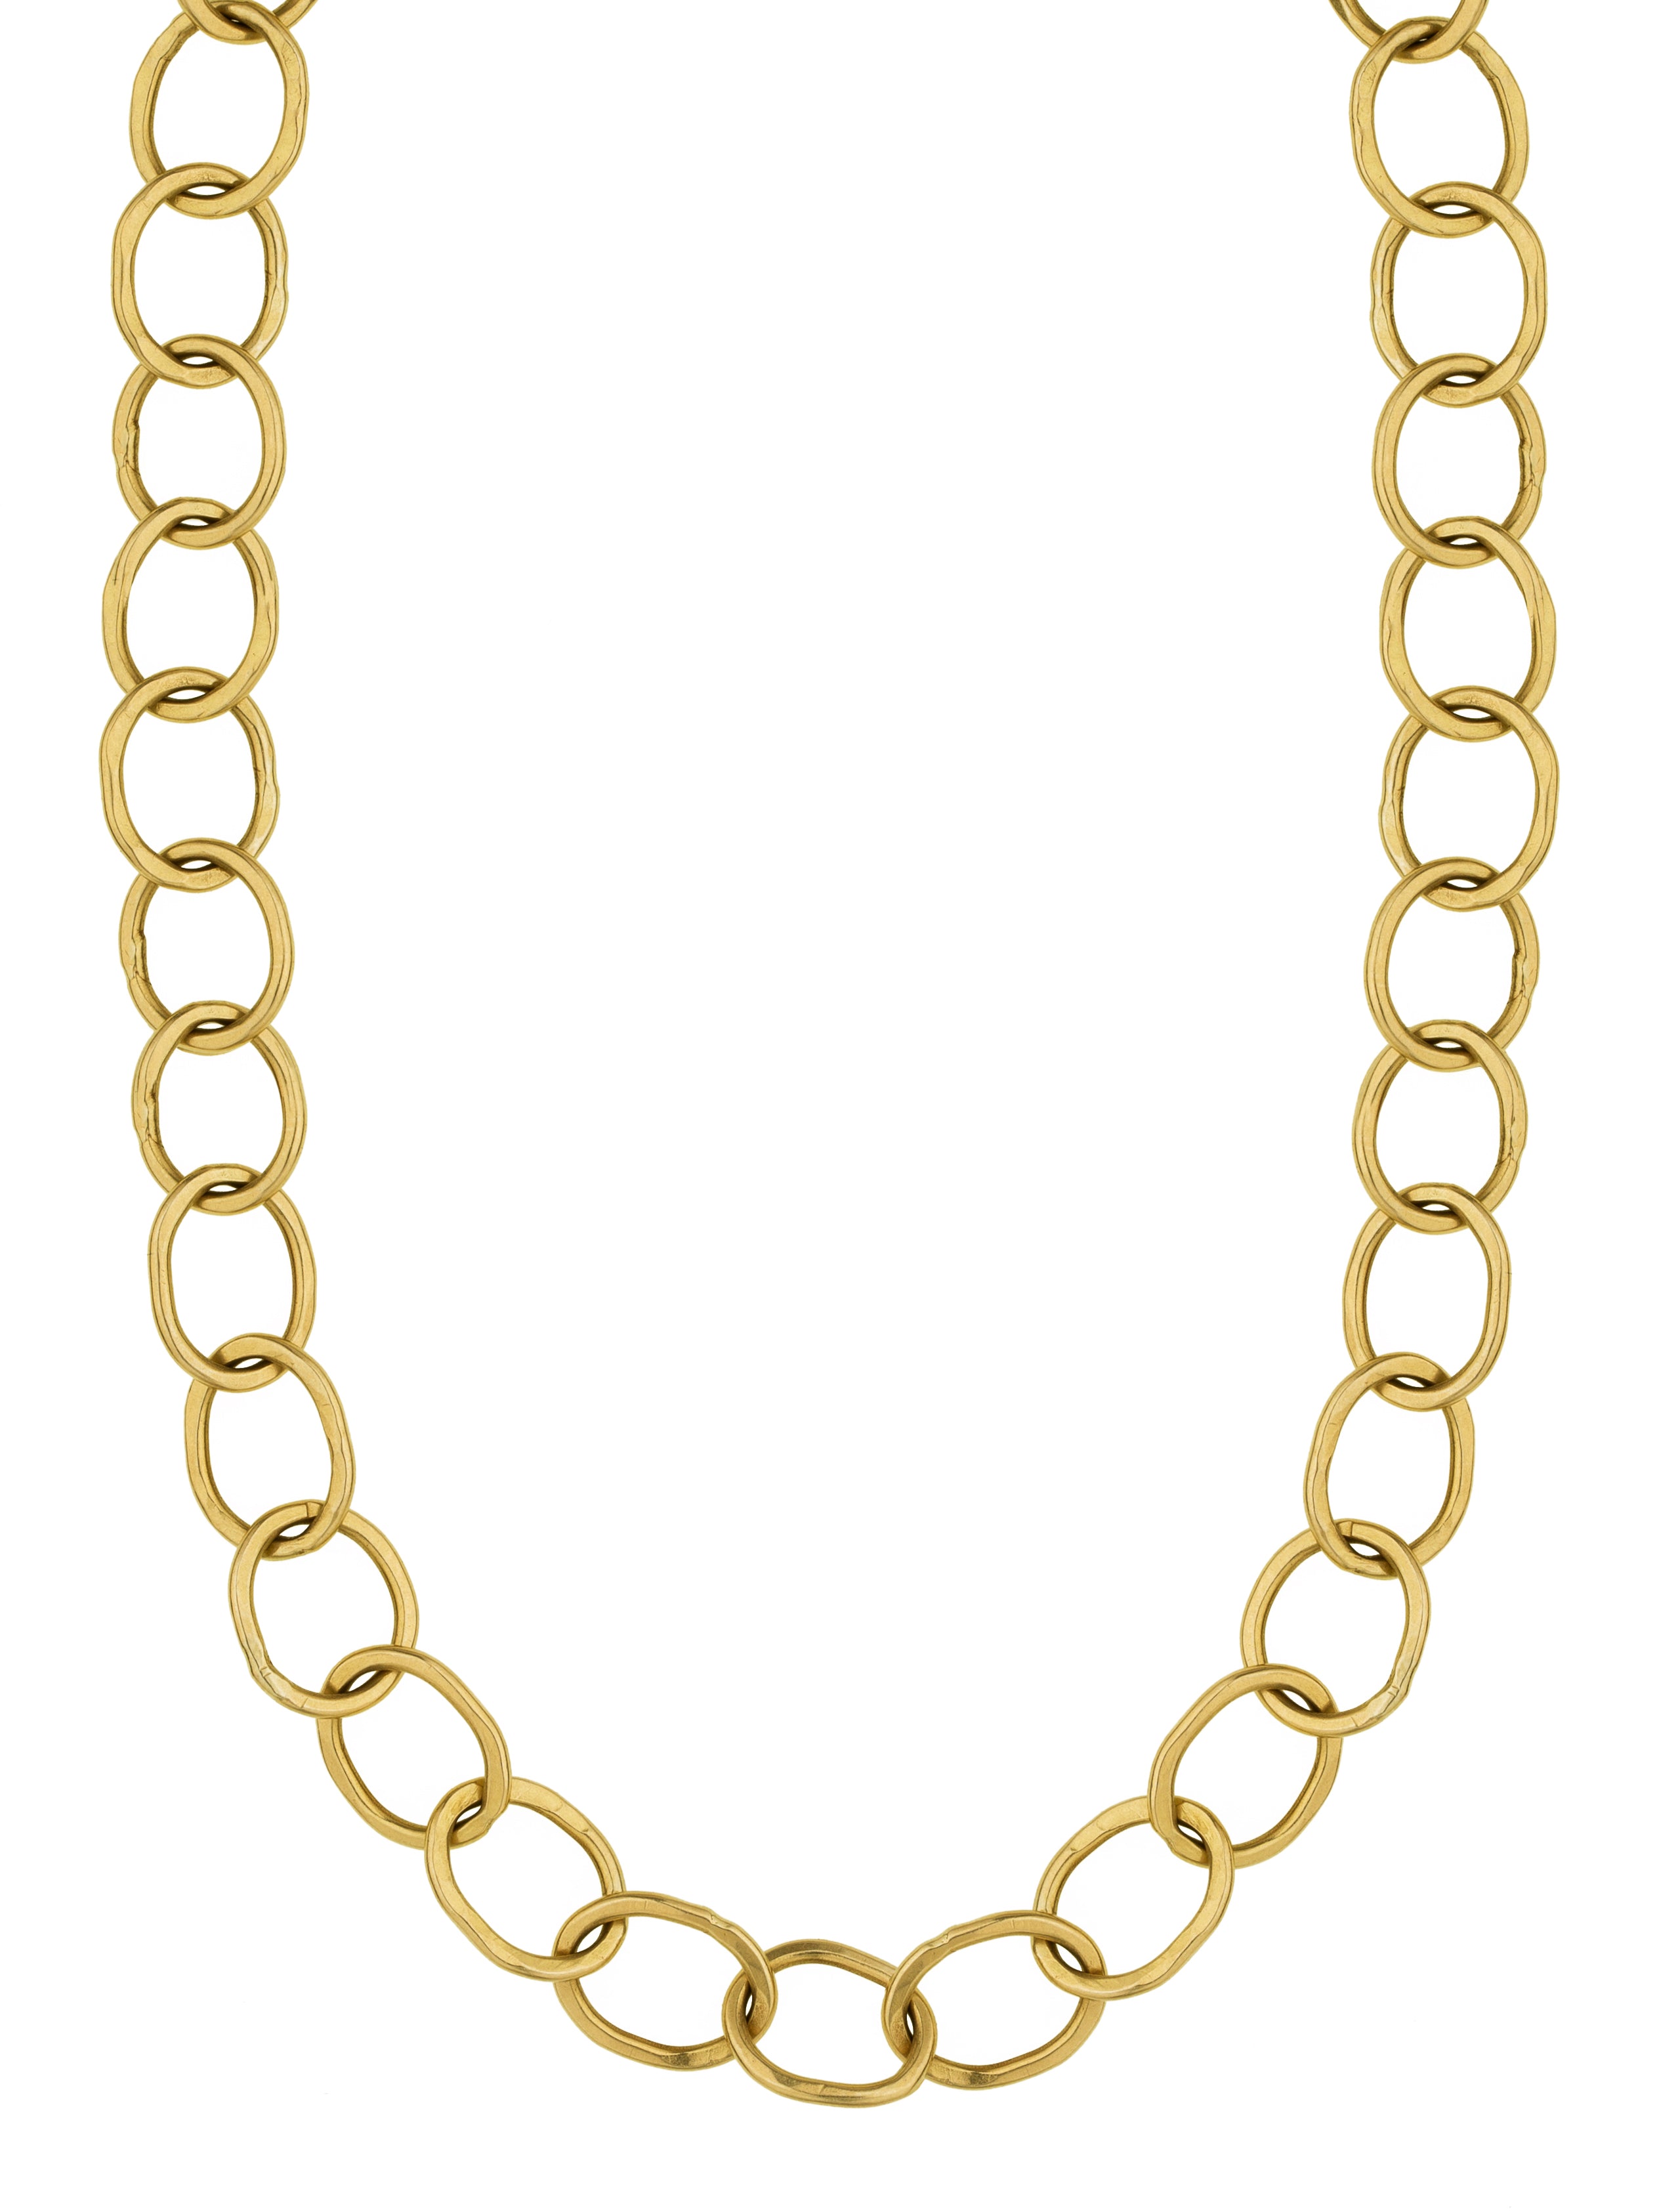 Avalon Necklace